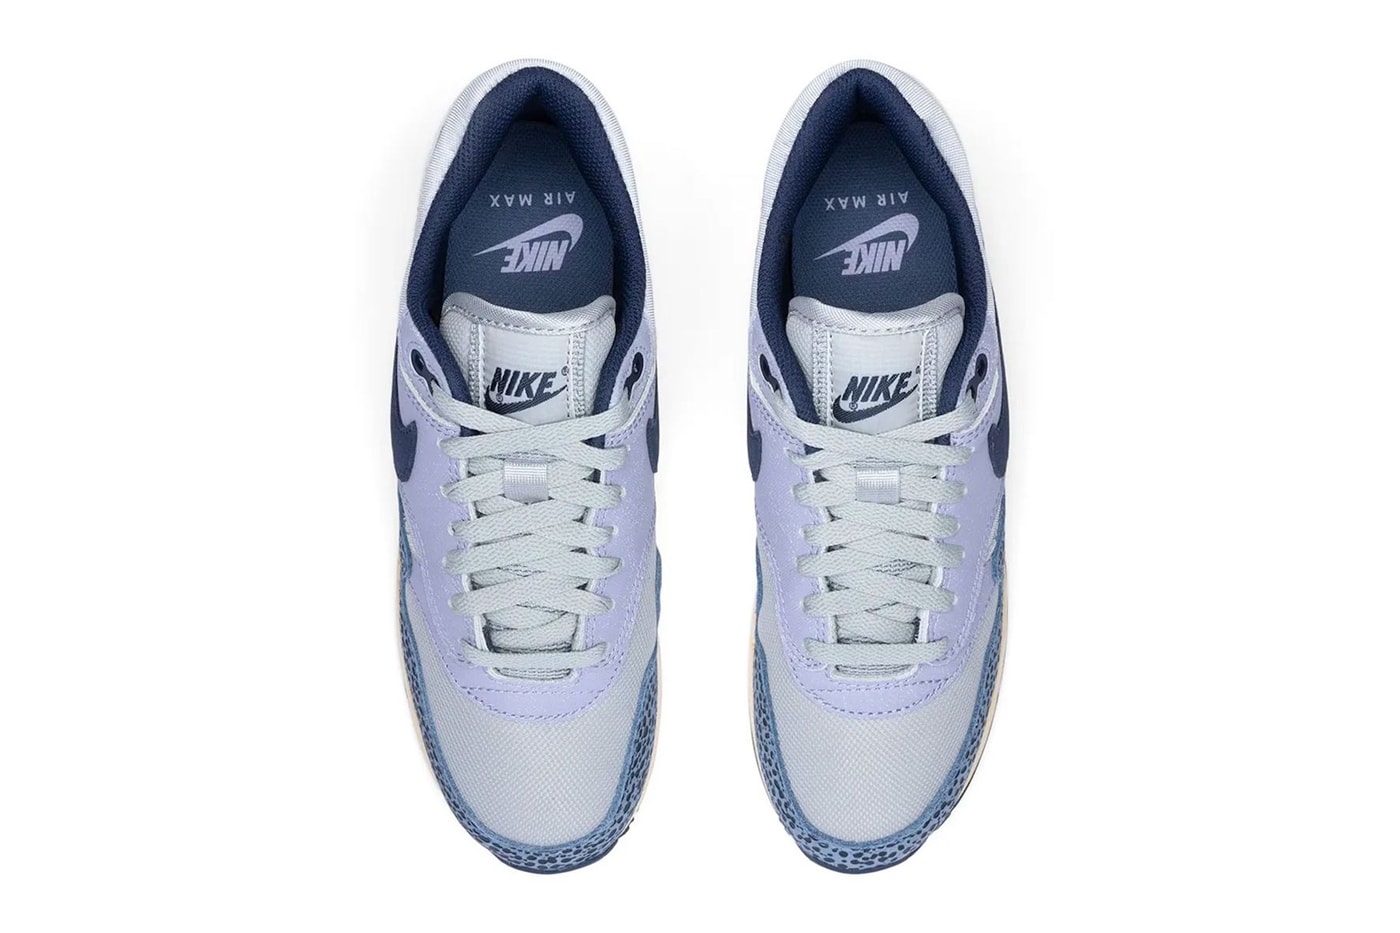 Nike air max 1 blue safari dv7525 001 june 16 170 usd release info date price